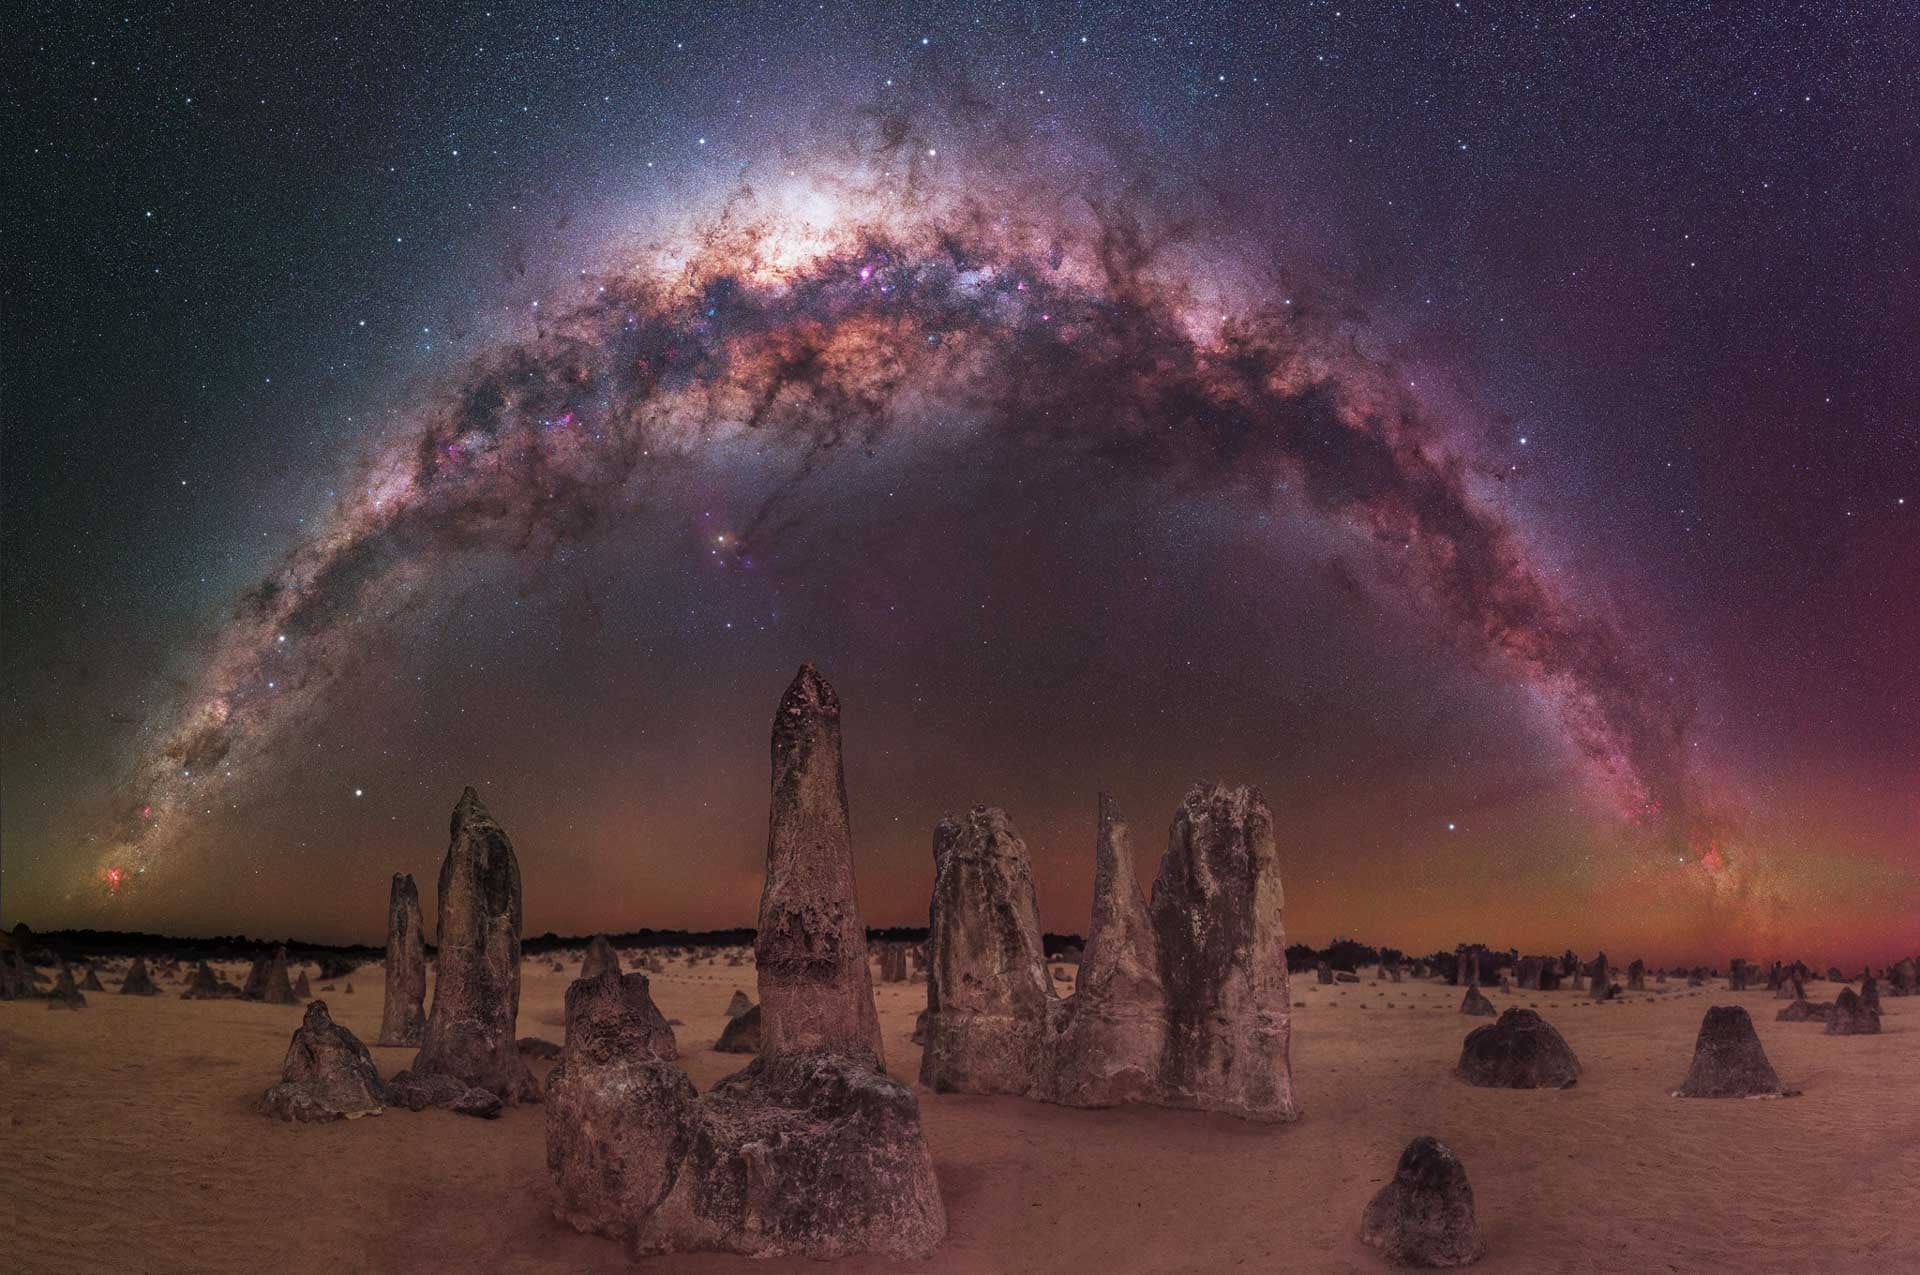 The Milky Way arching over rocks in the Australian desert. (Photo: Trevor Dobson)